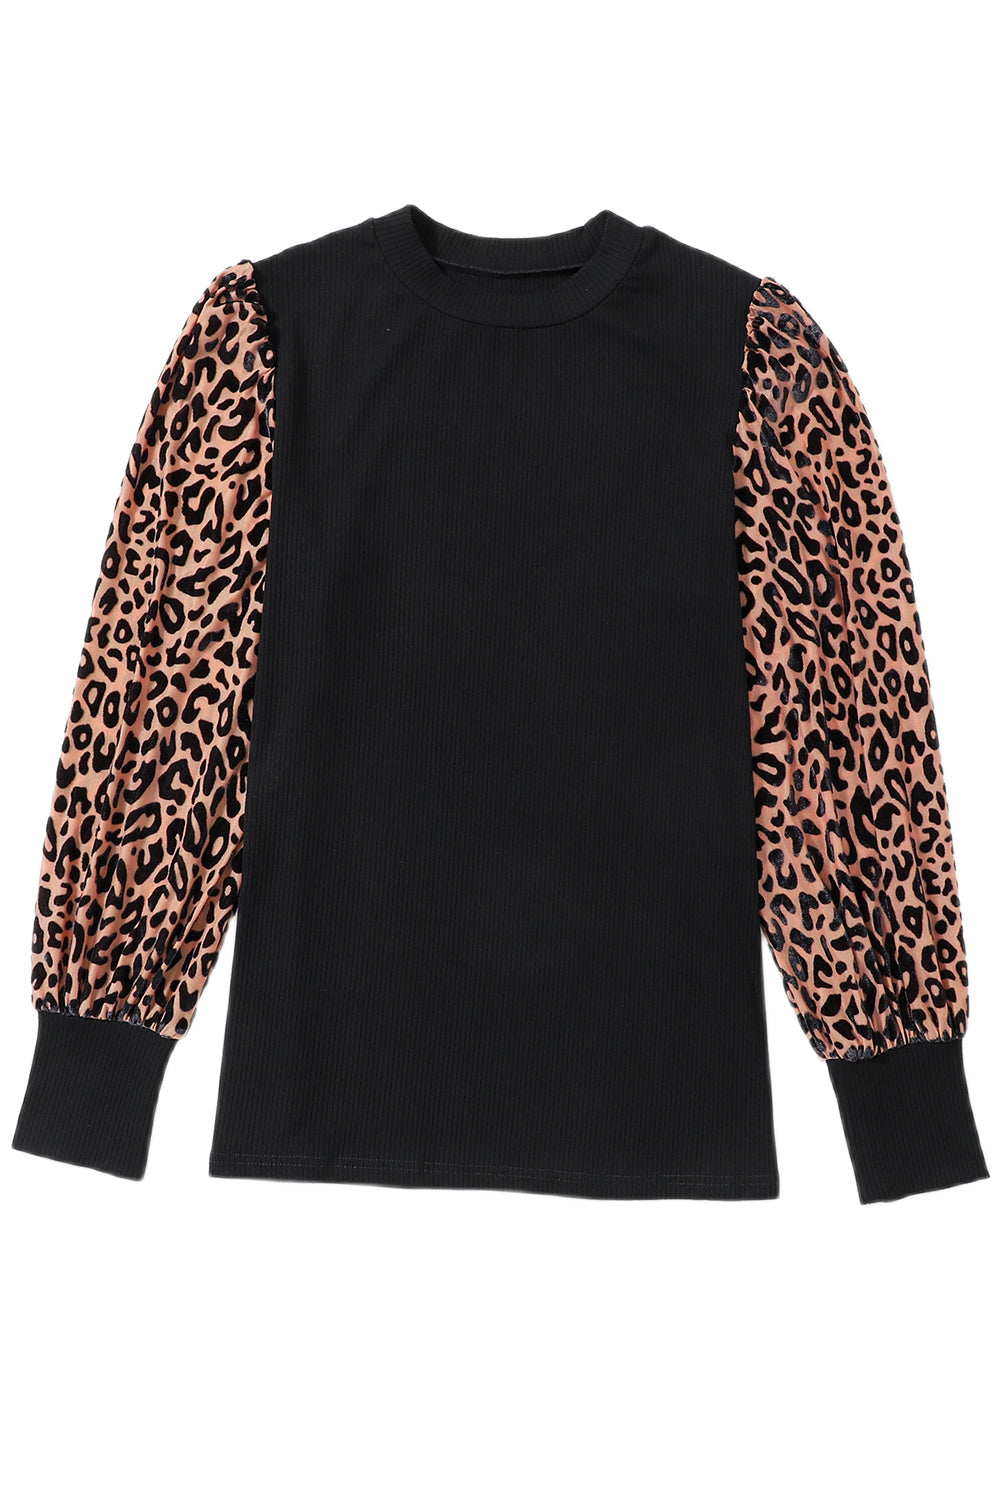 Blouse en tricot côtelé à manches longues et imprimé léopard abricot